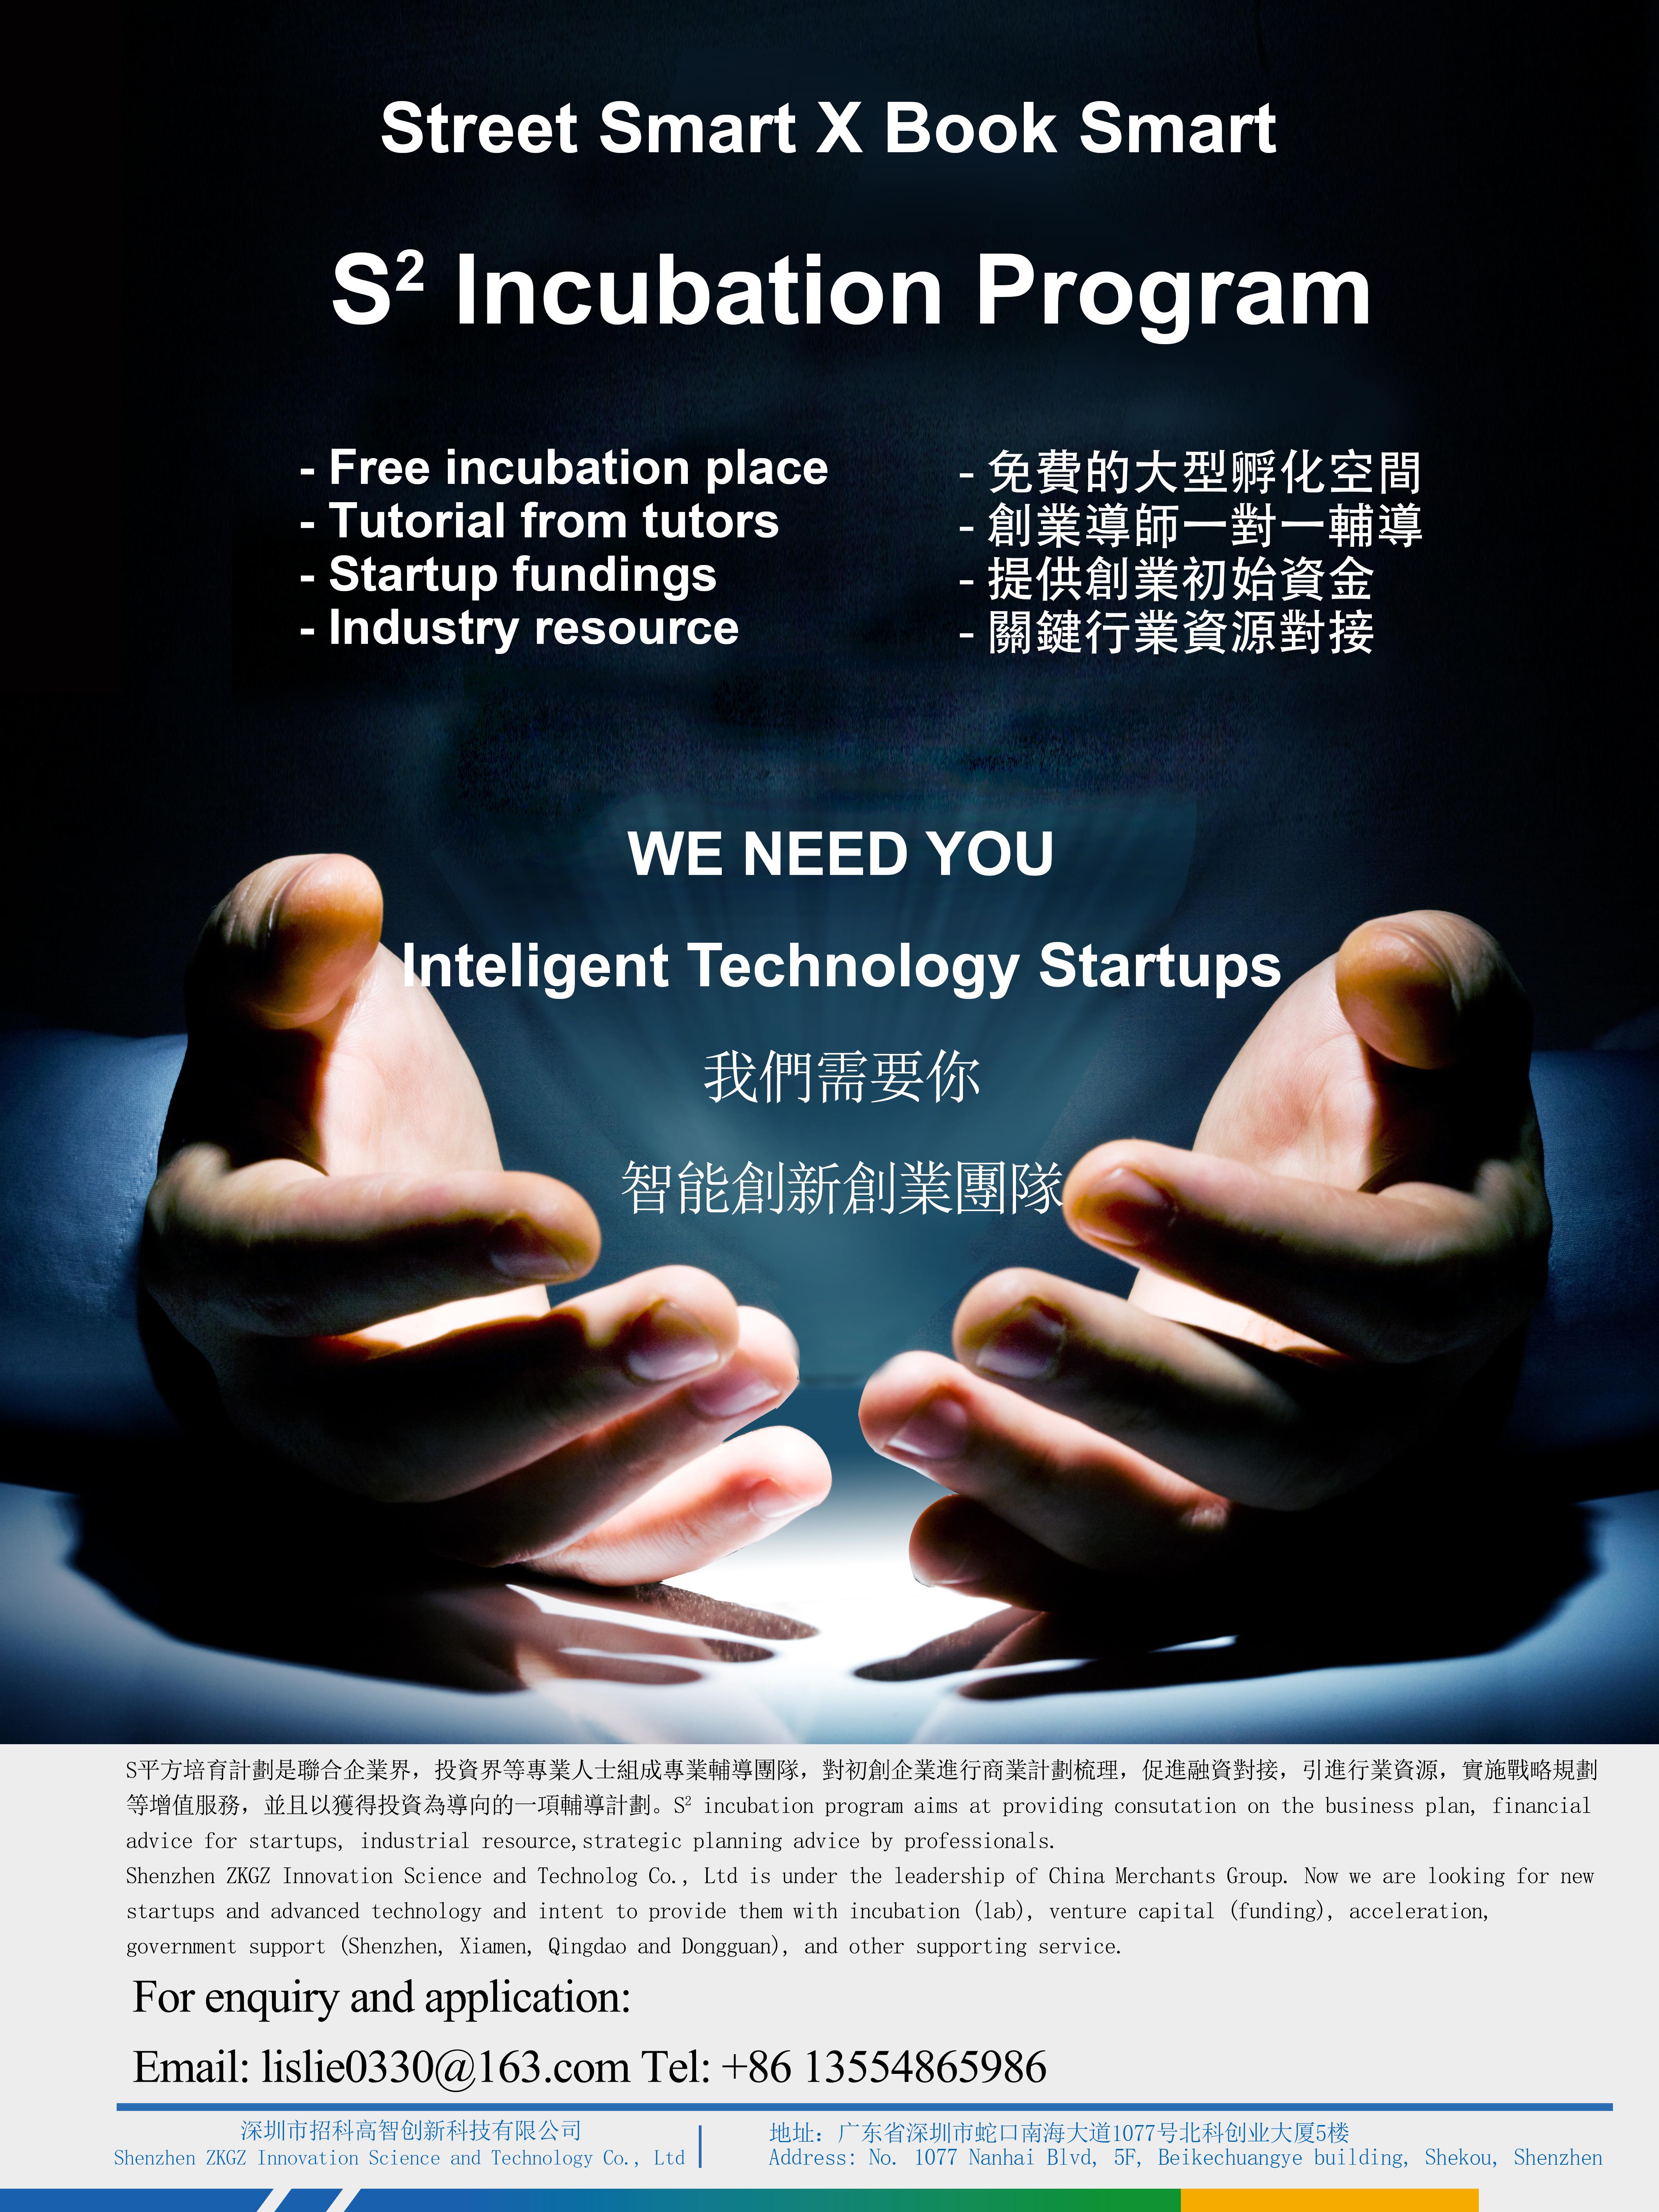 S2 Incubation program poster